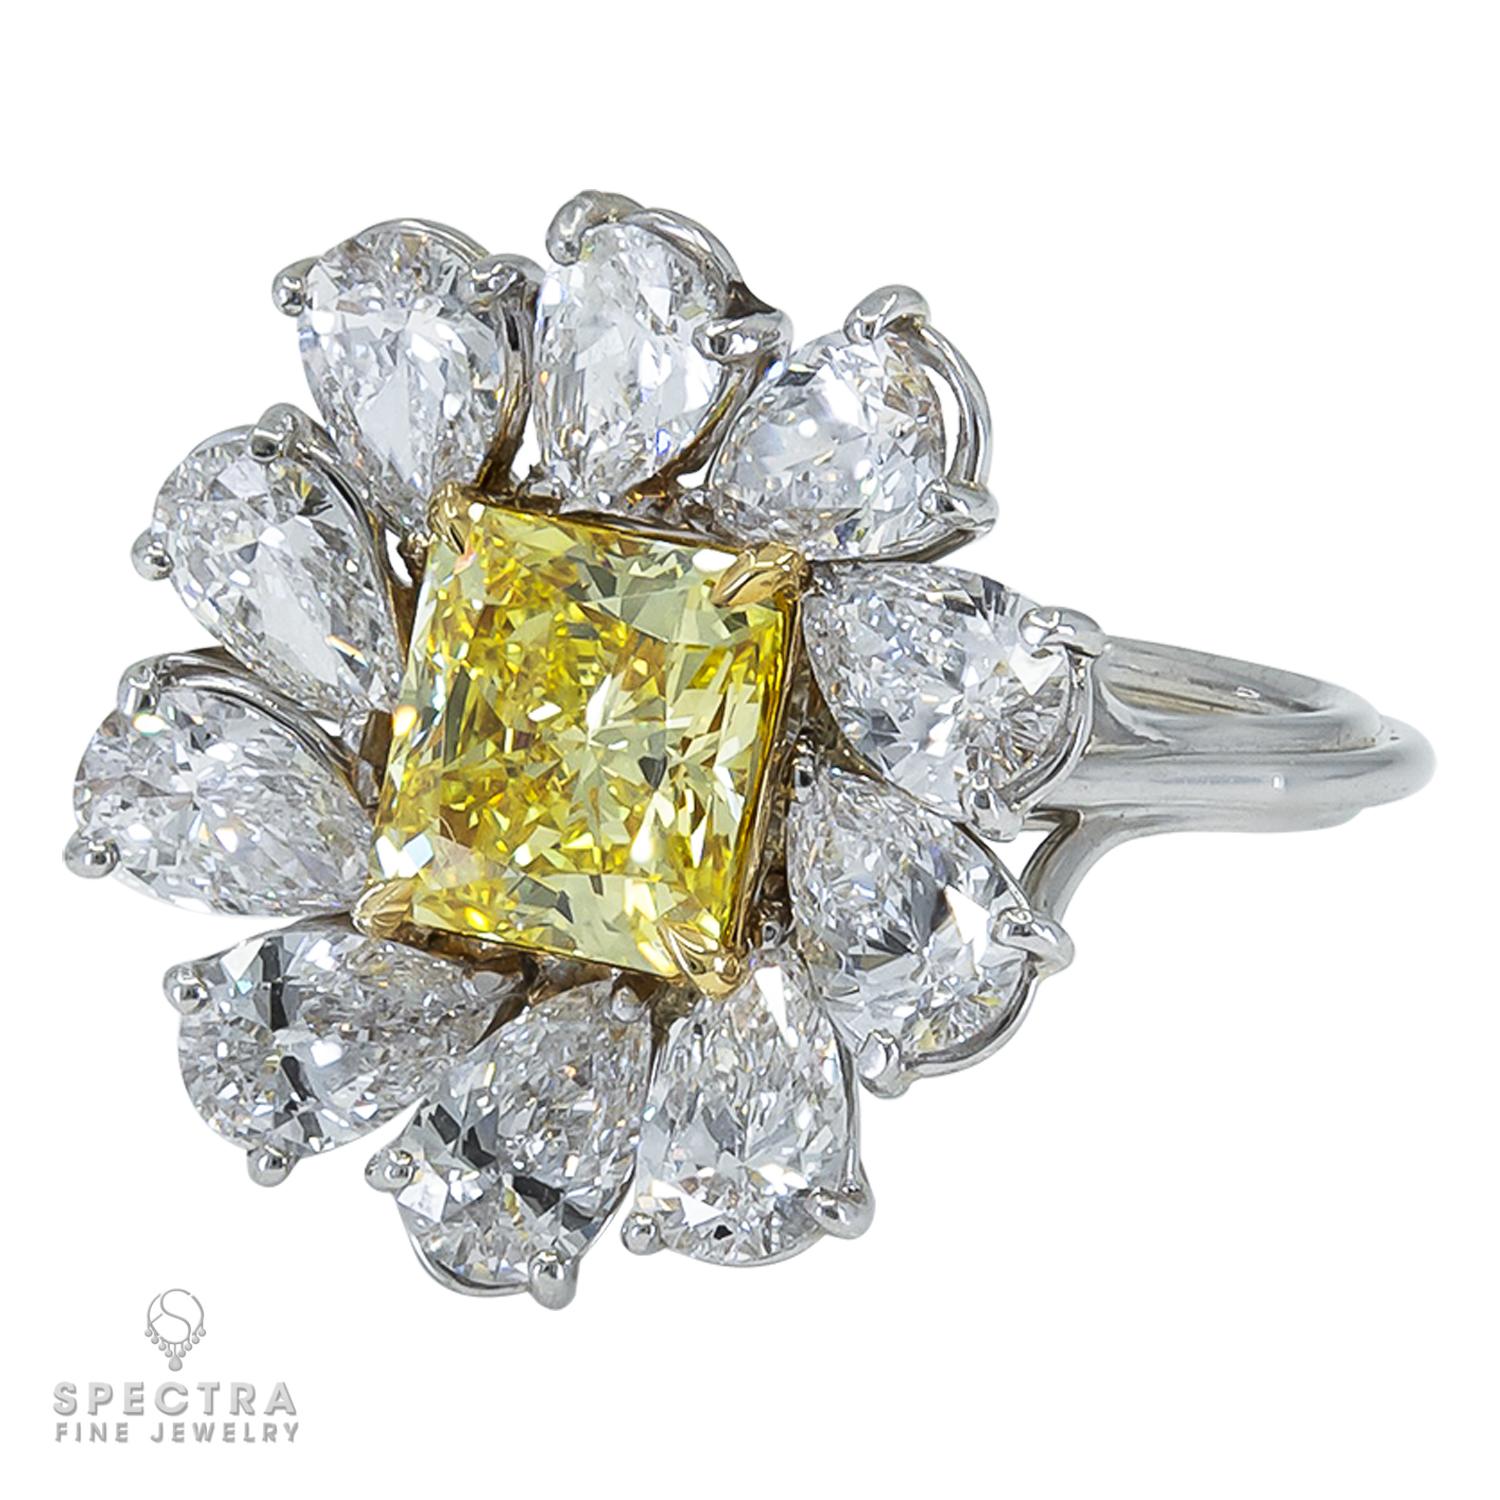 Ein Cocktailring mit einem leuchtend gelben Diamanten im Brillantschliff mit einem Gesamtgewicht von 1,47 Karat und einer Reinheit von VVS1.
Der Diamant ist von GIA zertifiziert. 
Der Mittelstein ist mit 10 birnenförmigen Diamanten, Farbe G-H,